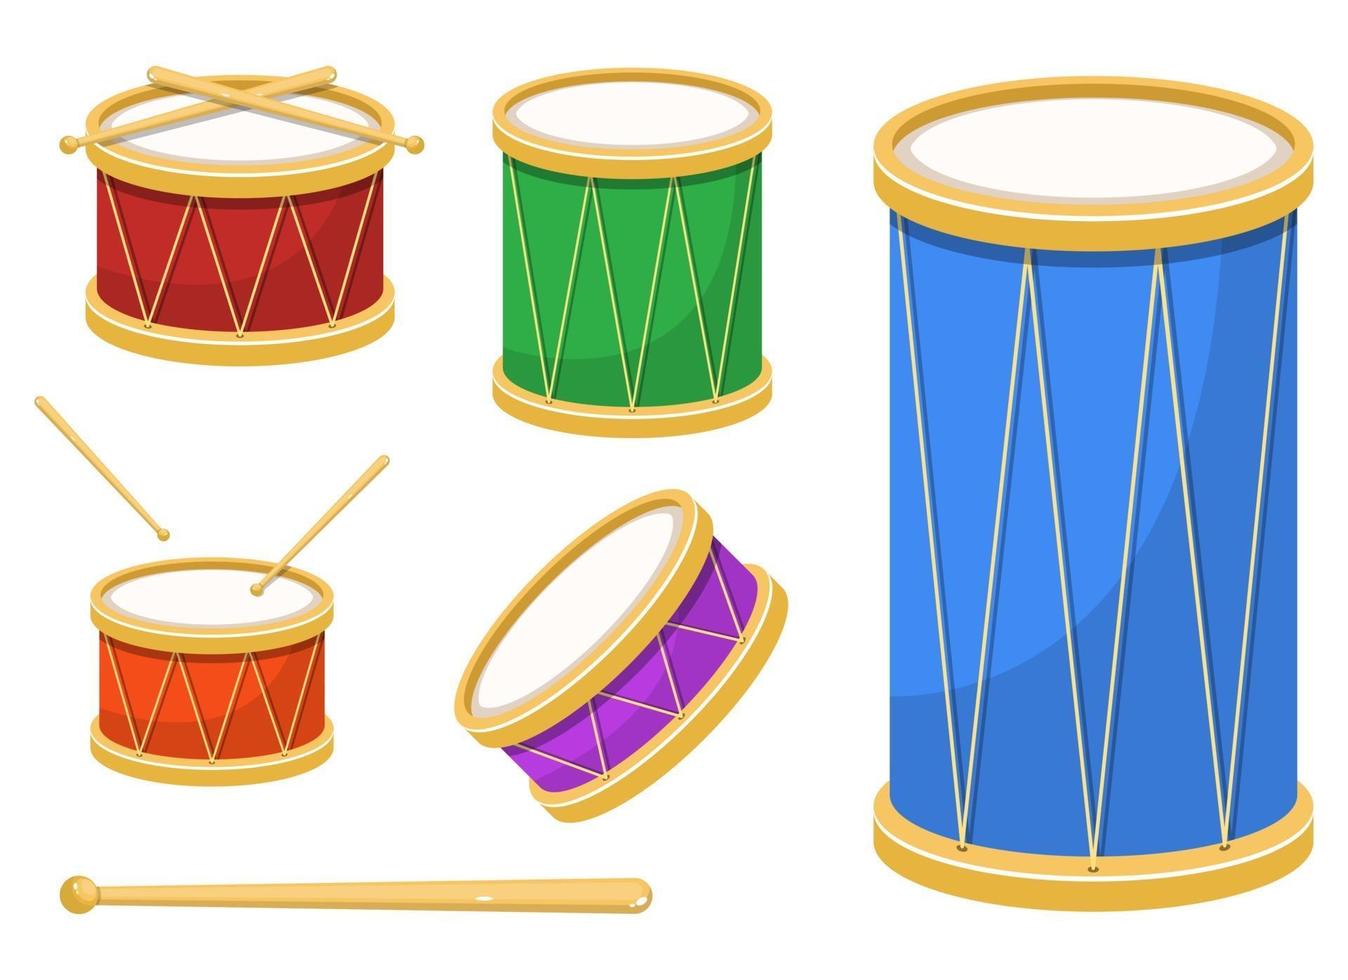 Stylish drum vector design illustration set isolated on white background